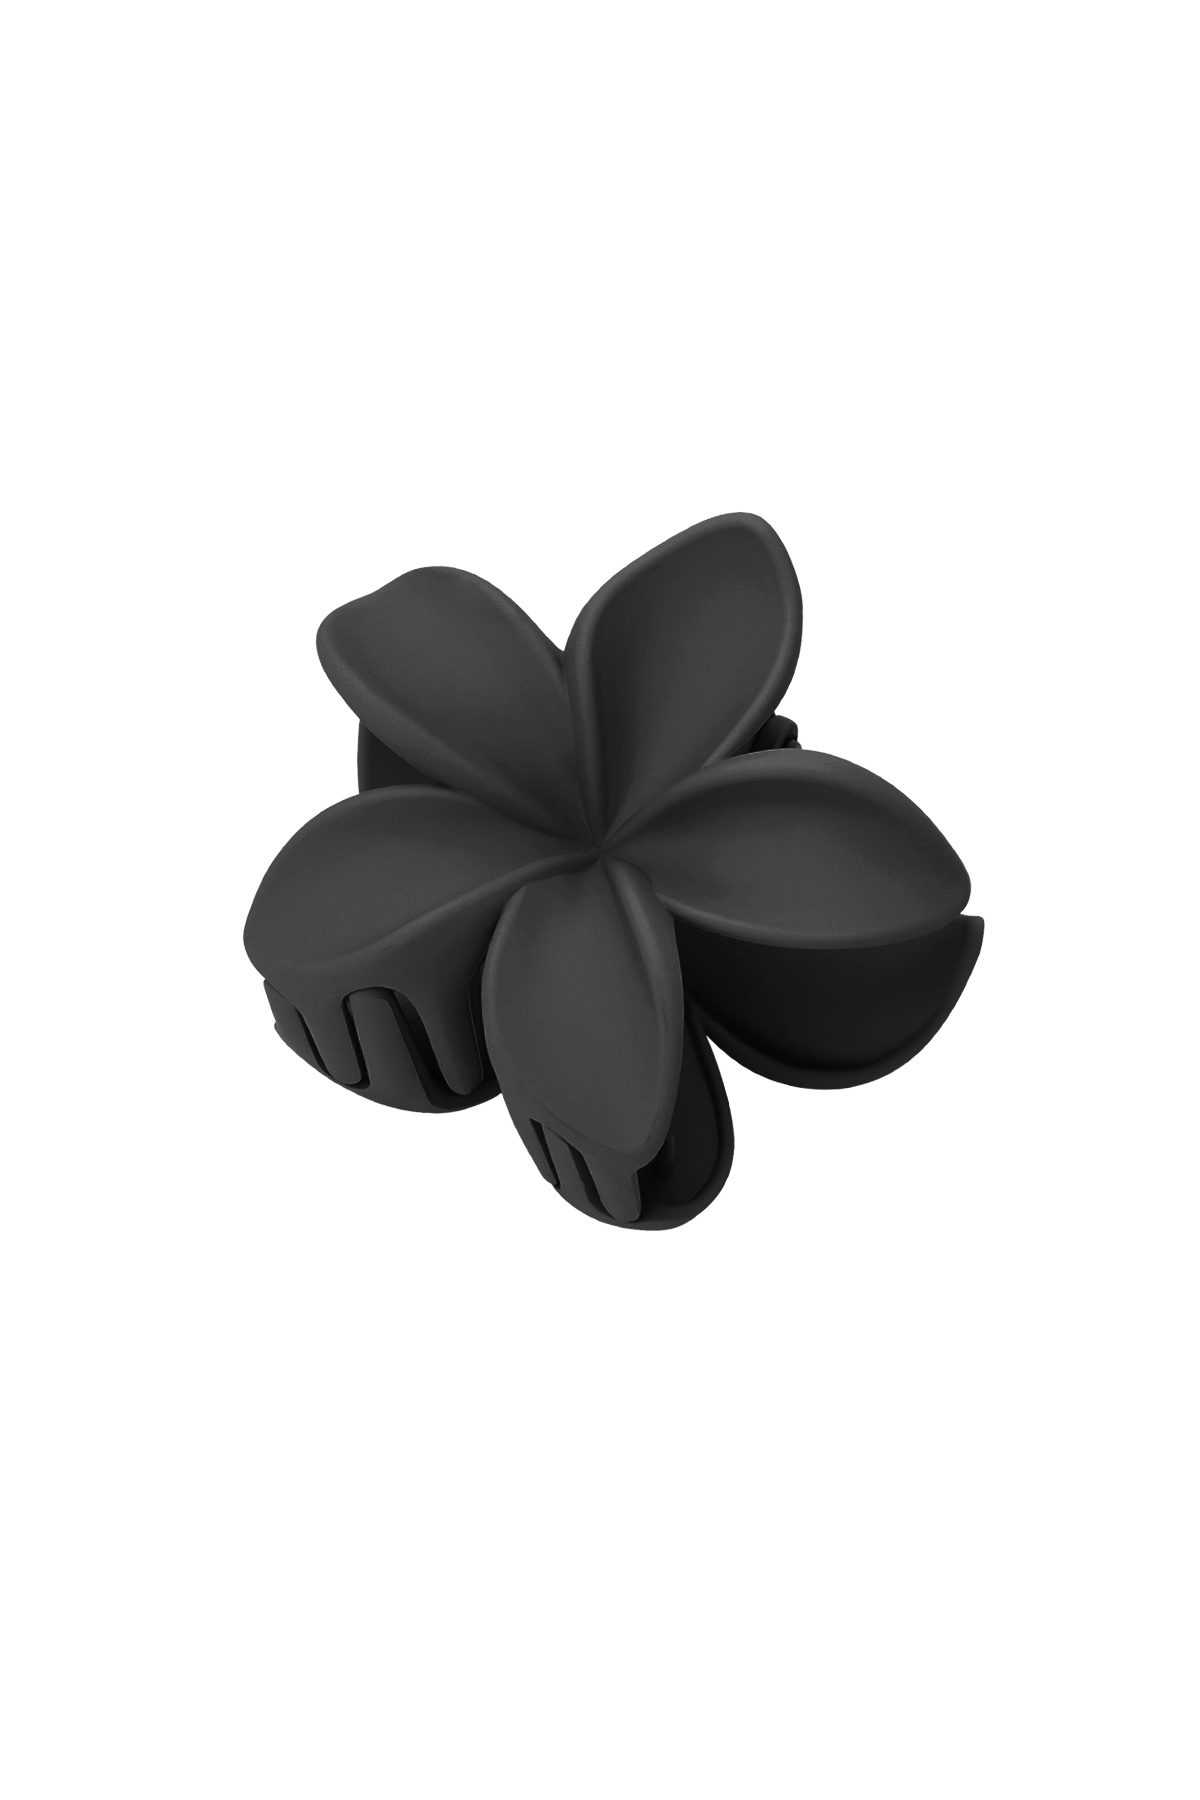 Saç tokası çiçek - siyah Plastik 